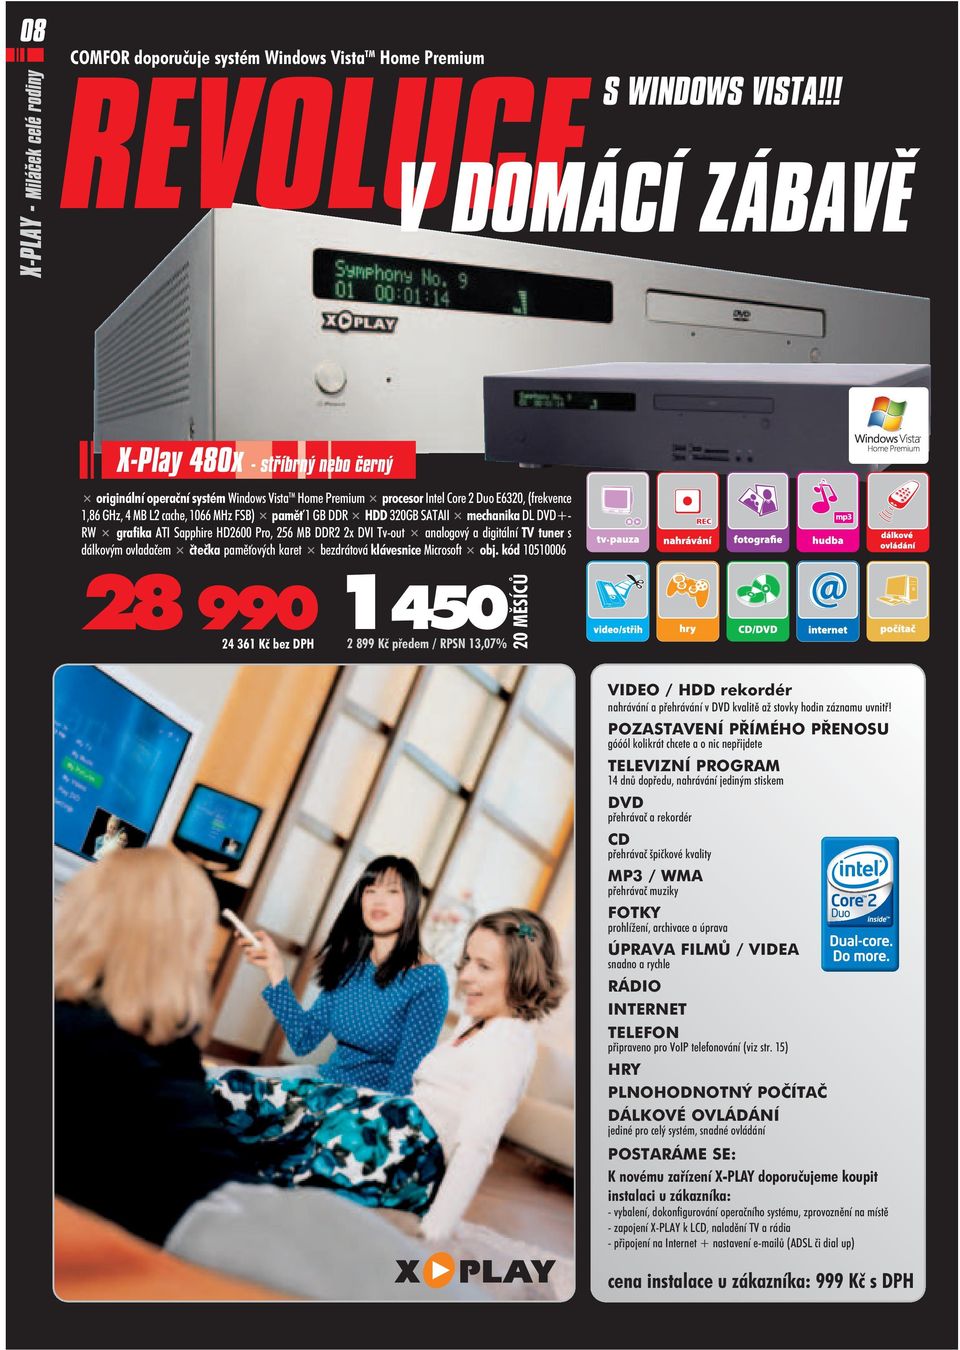 GB DDR HDD 320GB SATAII mechanika DL DVD+ RW grafika ATI Sapphire HD2600 Pro, 256 MB DDR2 2x DVI Tv out analogový a digitální TV tuner s dálkovým ovladaèem èteèka pamì ových karet bezdrátová